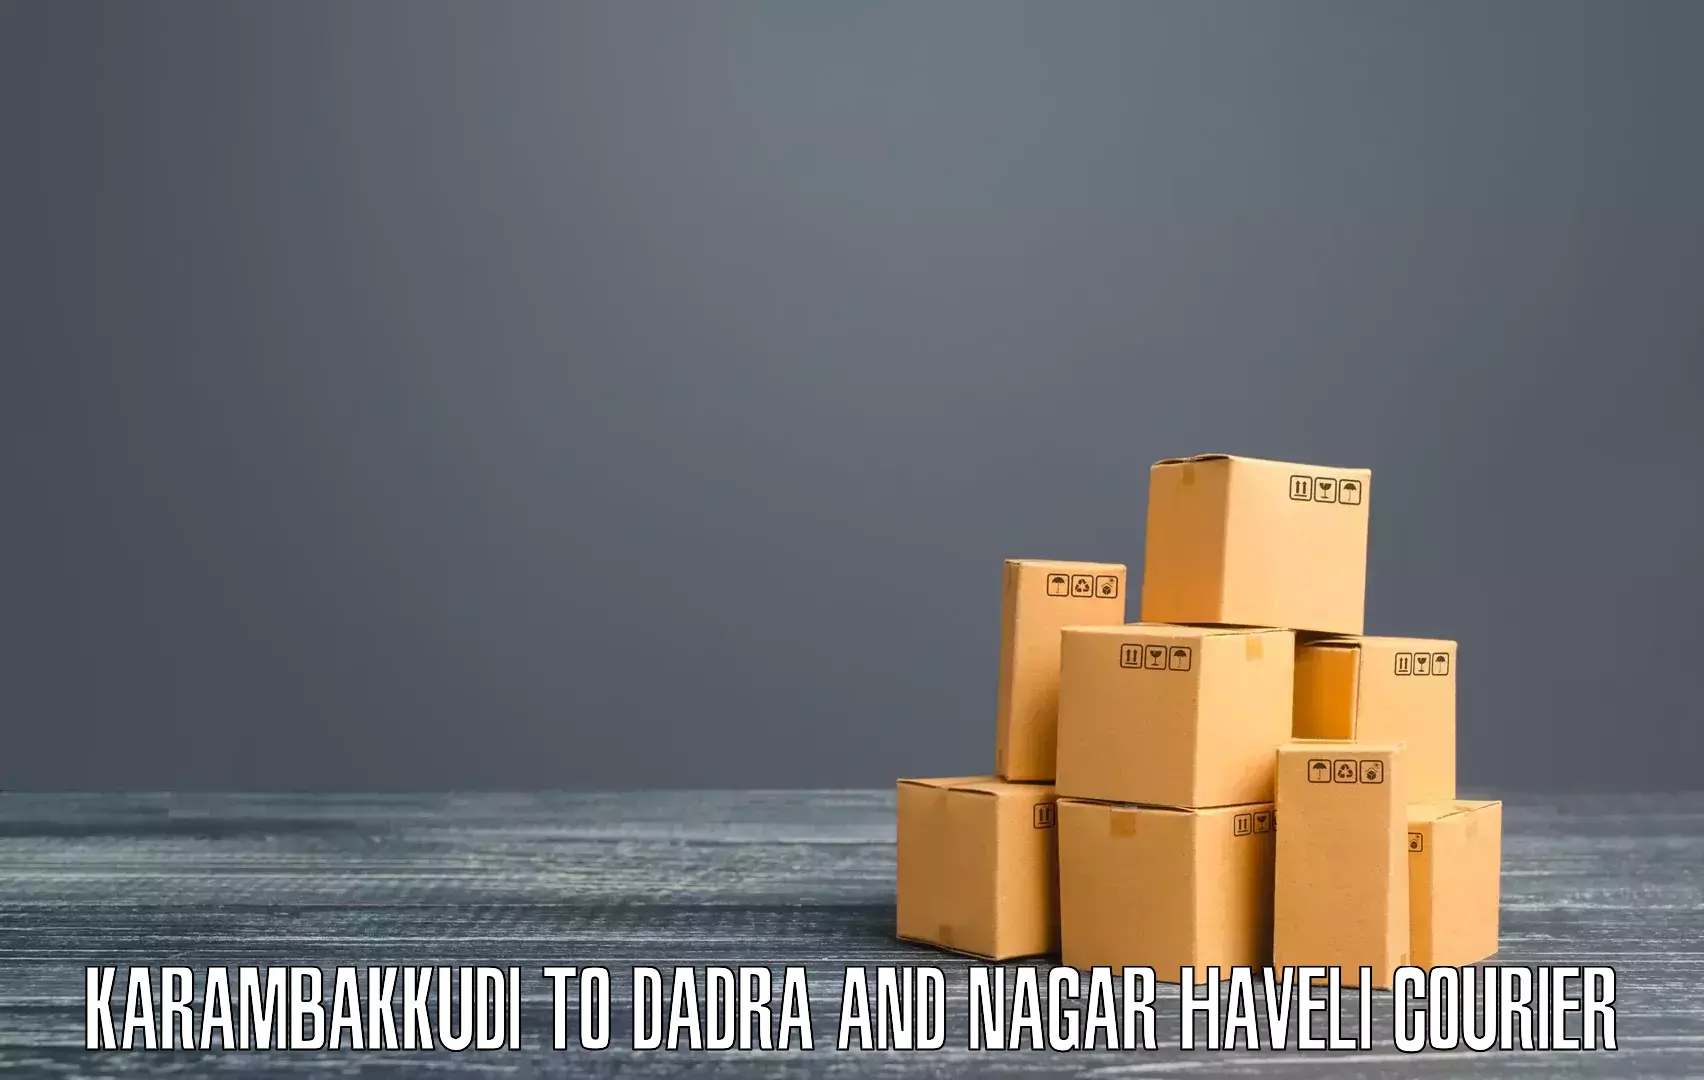 Efficient shipping platforms Karambakkudi to Dadra and Nagar Haveli